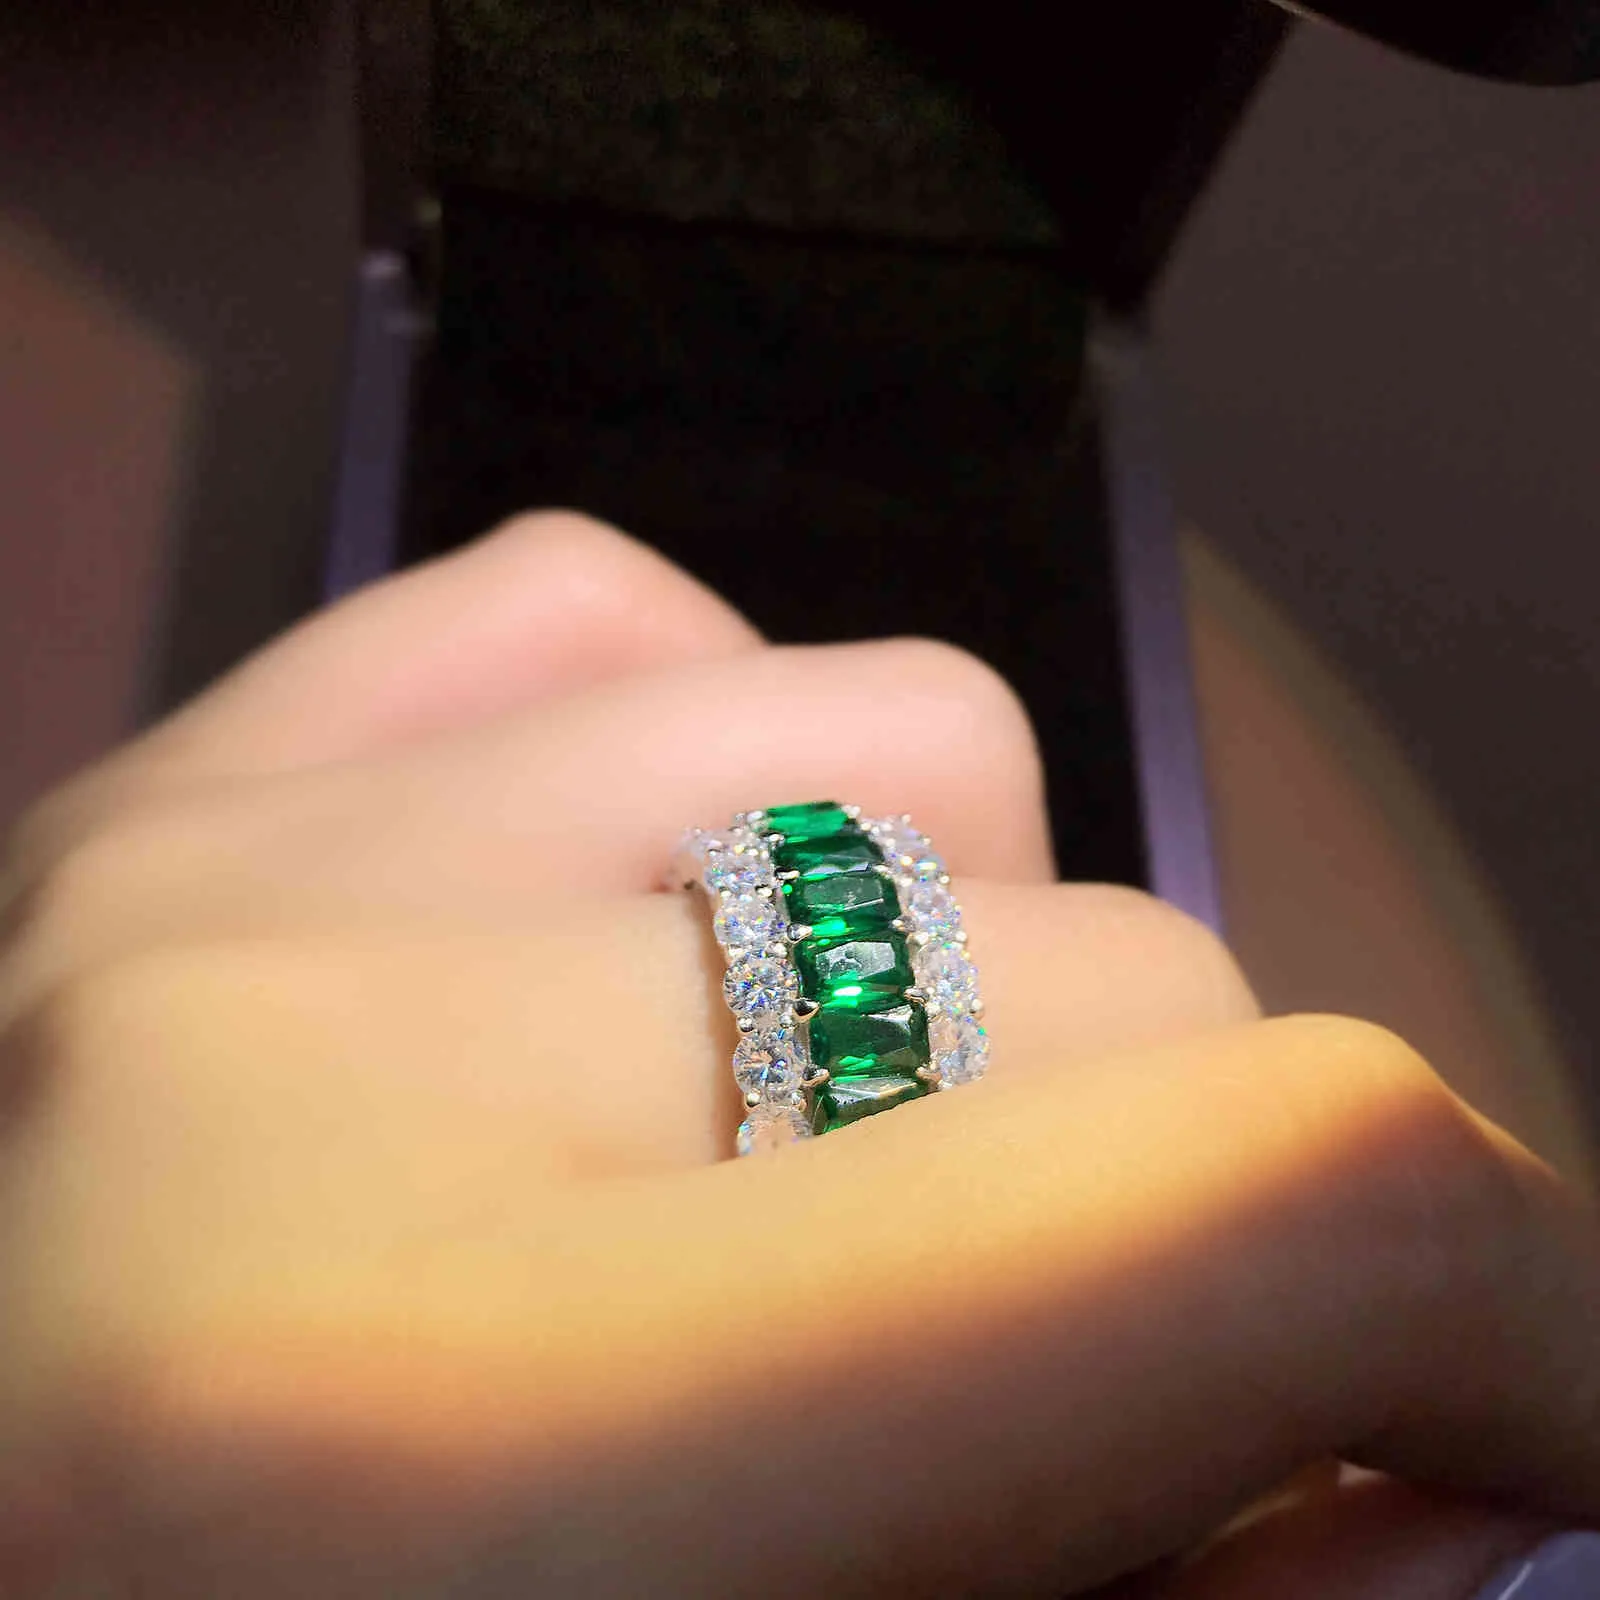 ELSIEUNEE 100% 925 Sterling Silver Créé Moissanite Emerald Gemstone Ring pour les femmes Anniversaire Cocktail Party Fine Jewelry 210330